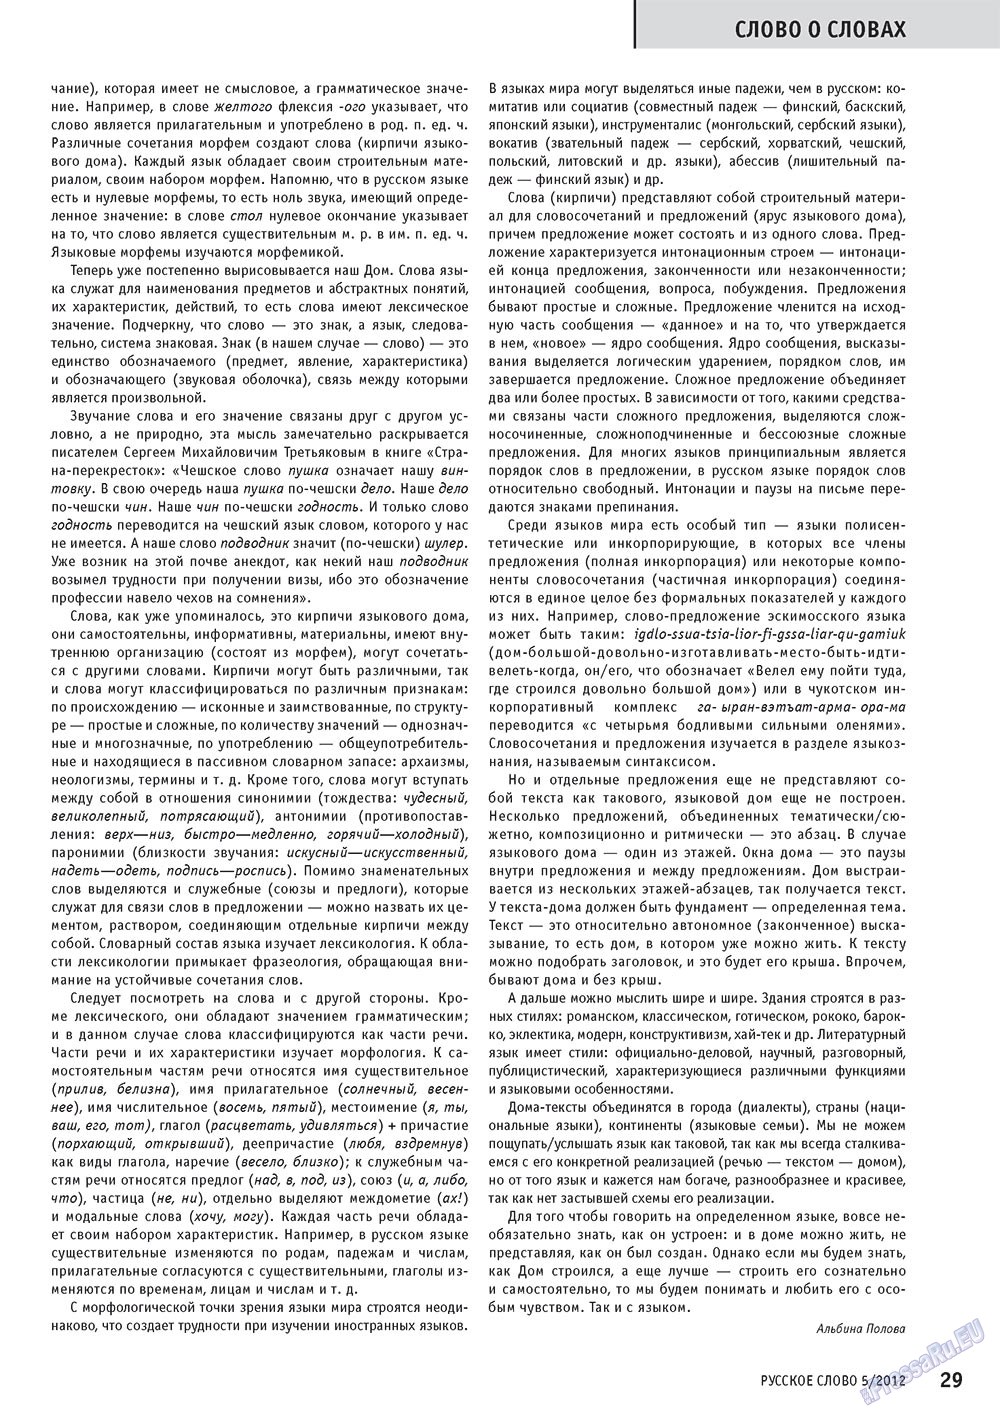 Русское слово, журнал. 2012 №5 стр.29